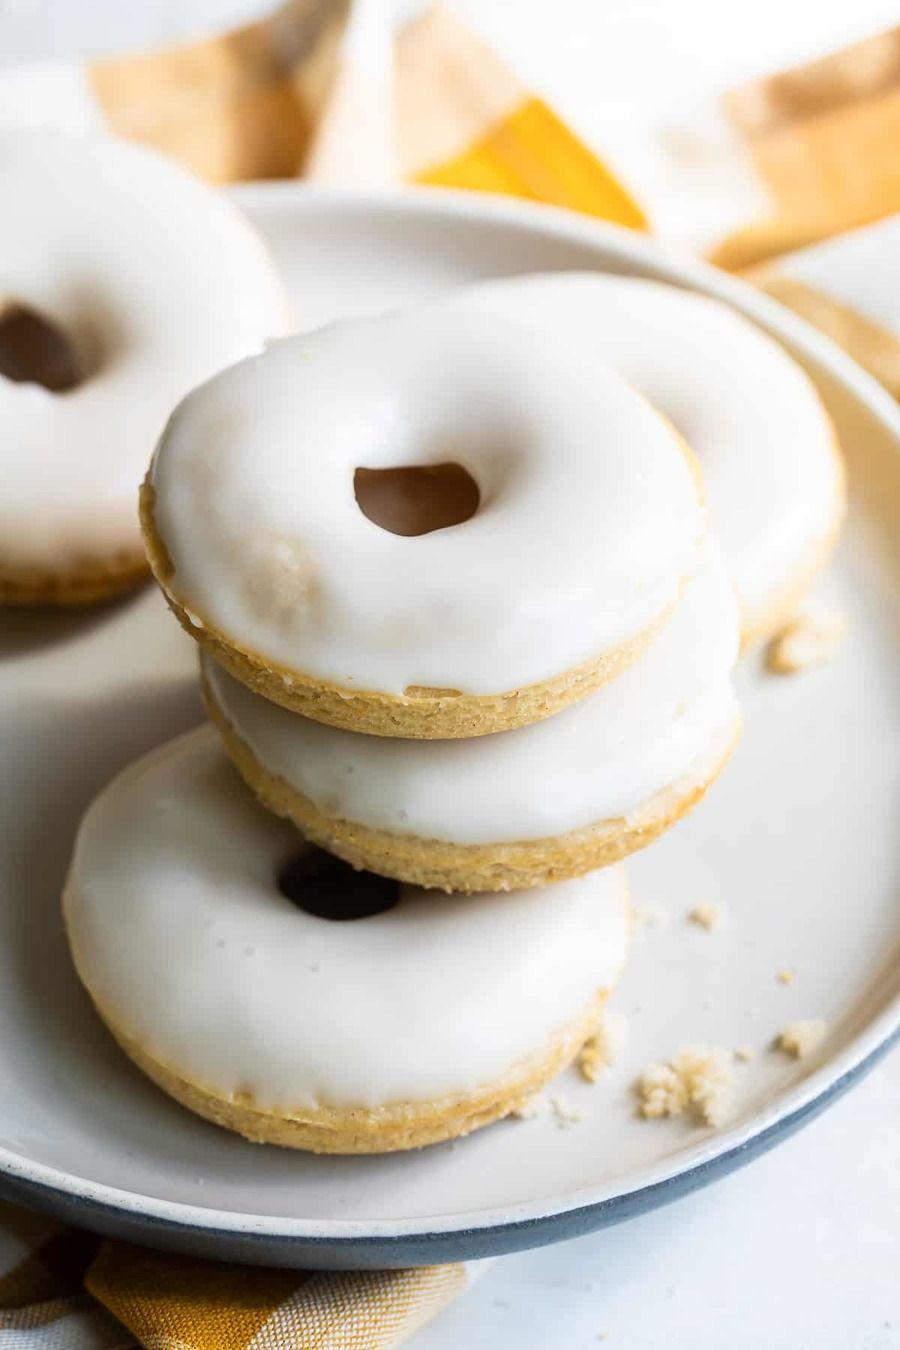 รูปภาพ:https://diethood.com/wp-content/uploads/2011/08/baked-doughnuts-12.jpg